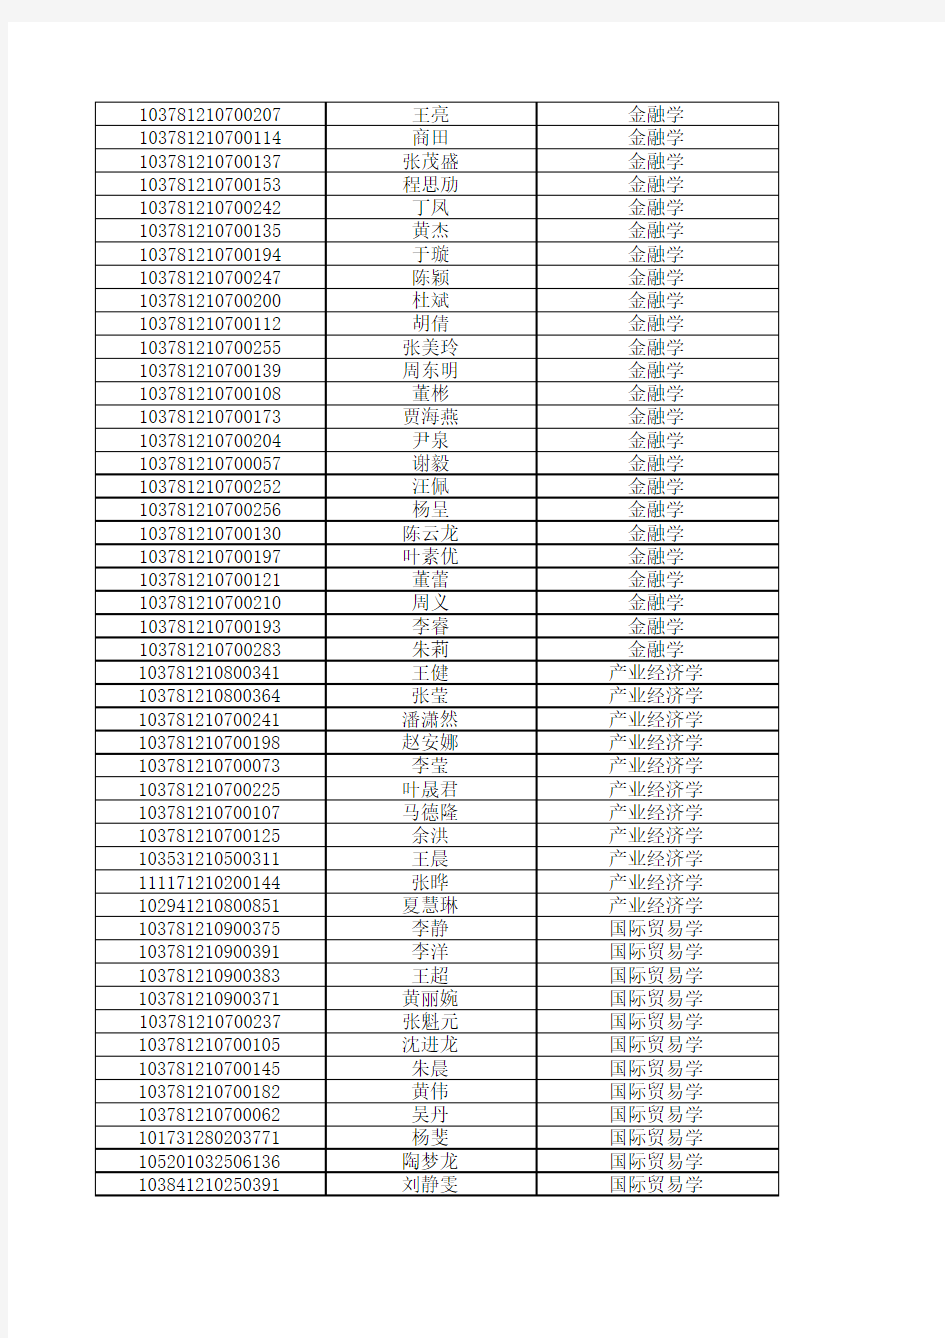 安徽财经大学2011年硕士研究生拟录取名单(不含推免)